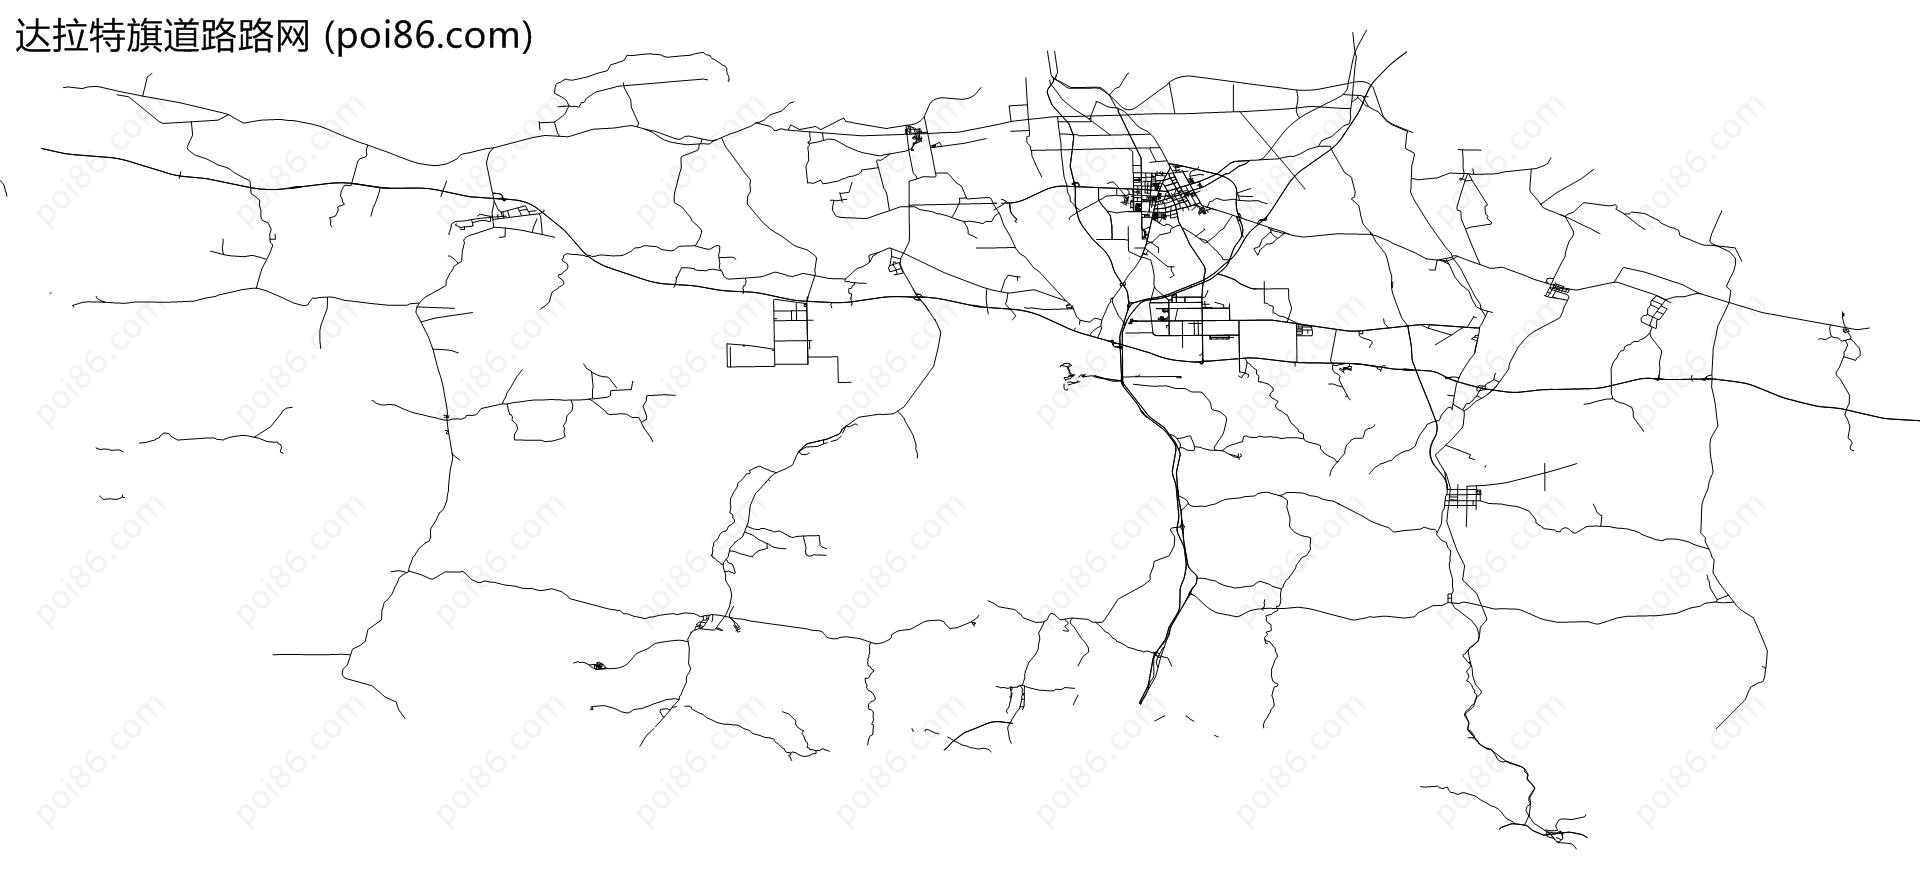 达拉特旗道路路网地图